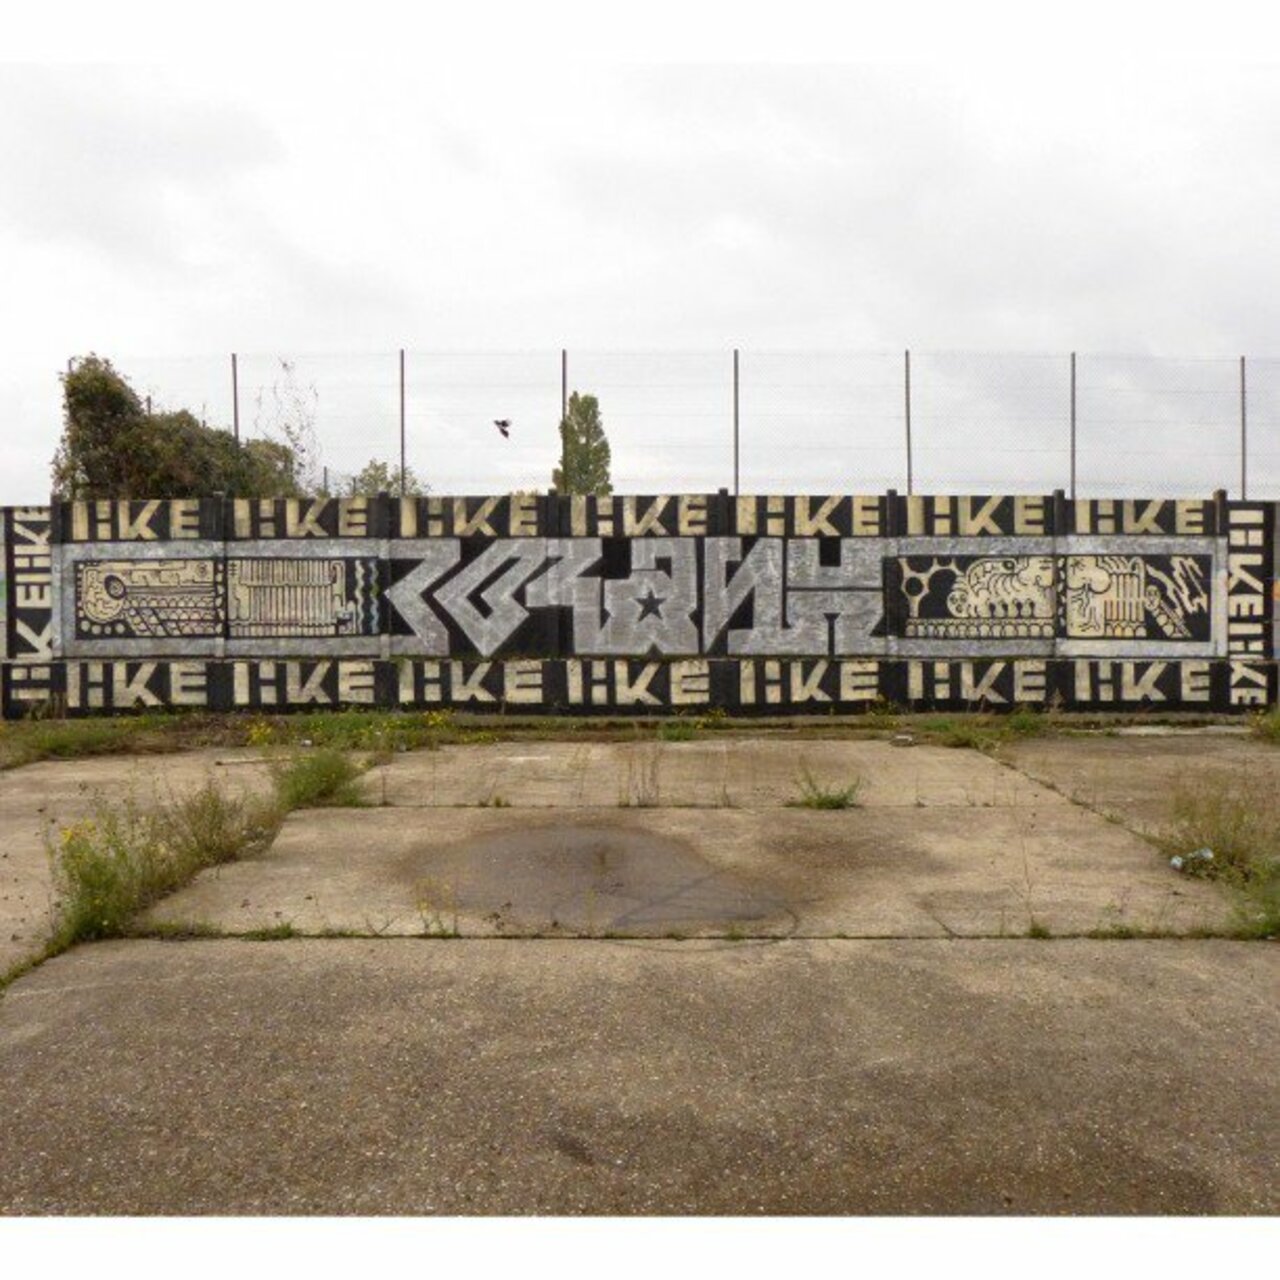 KRASH
#LikeLike #streetart #graffiti #graff #art #fatcap #bombing #sprayart #spraycanart #wallart #handstyle #lette… https://t.co/nVJrqi3MSk